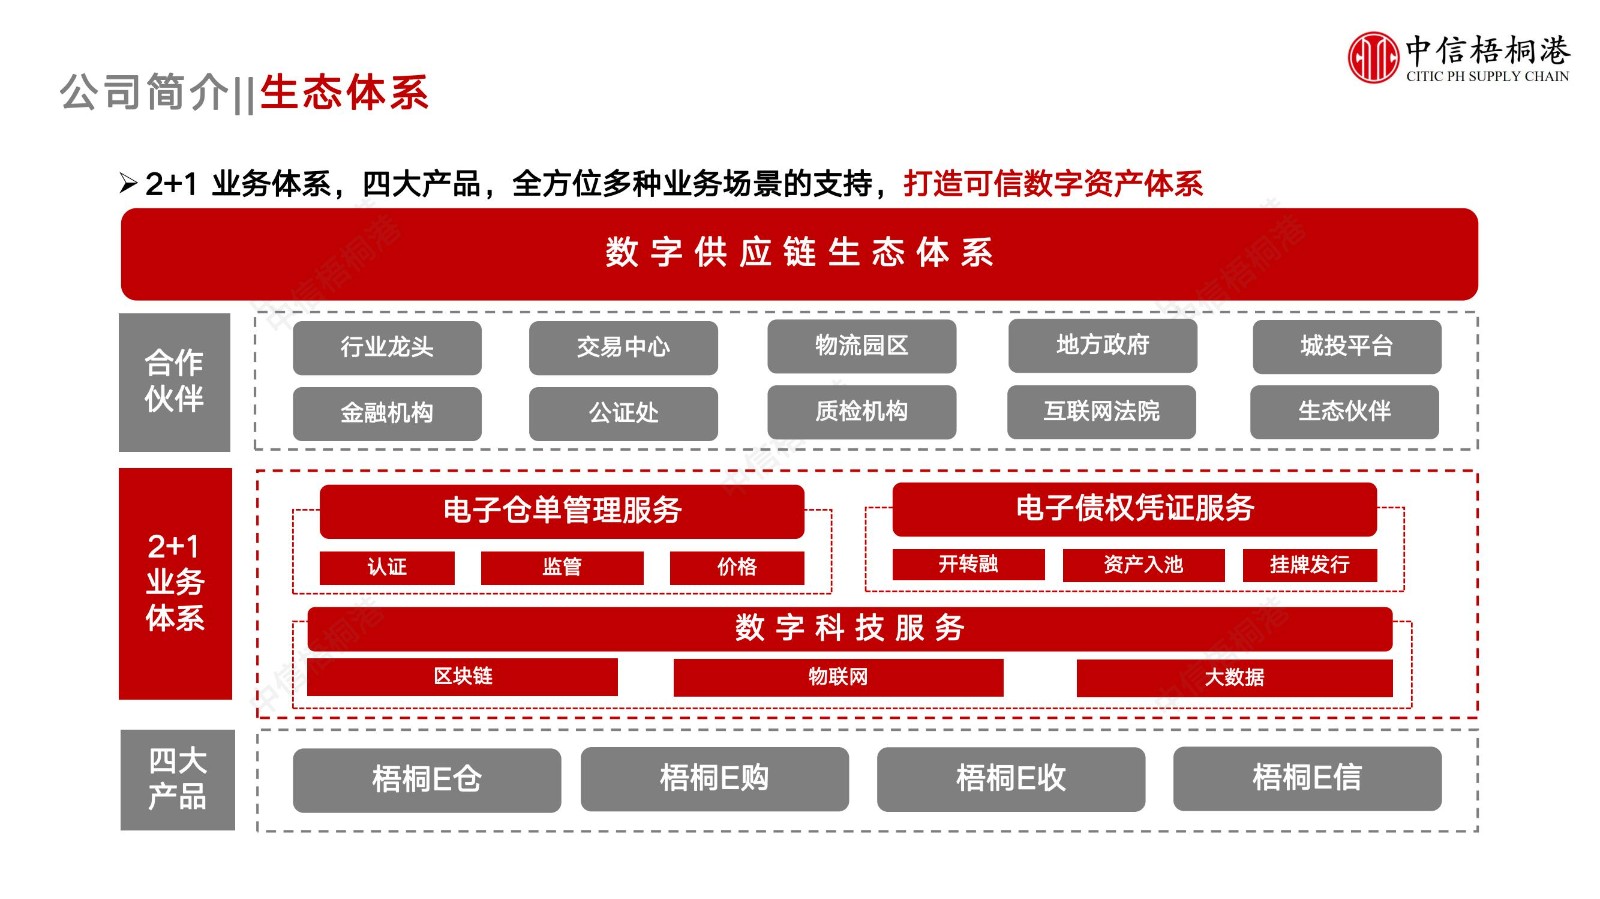 【公司简介】中信梧桐港供应链综合解决方案（202307）更新-1_05.jpg